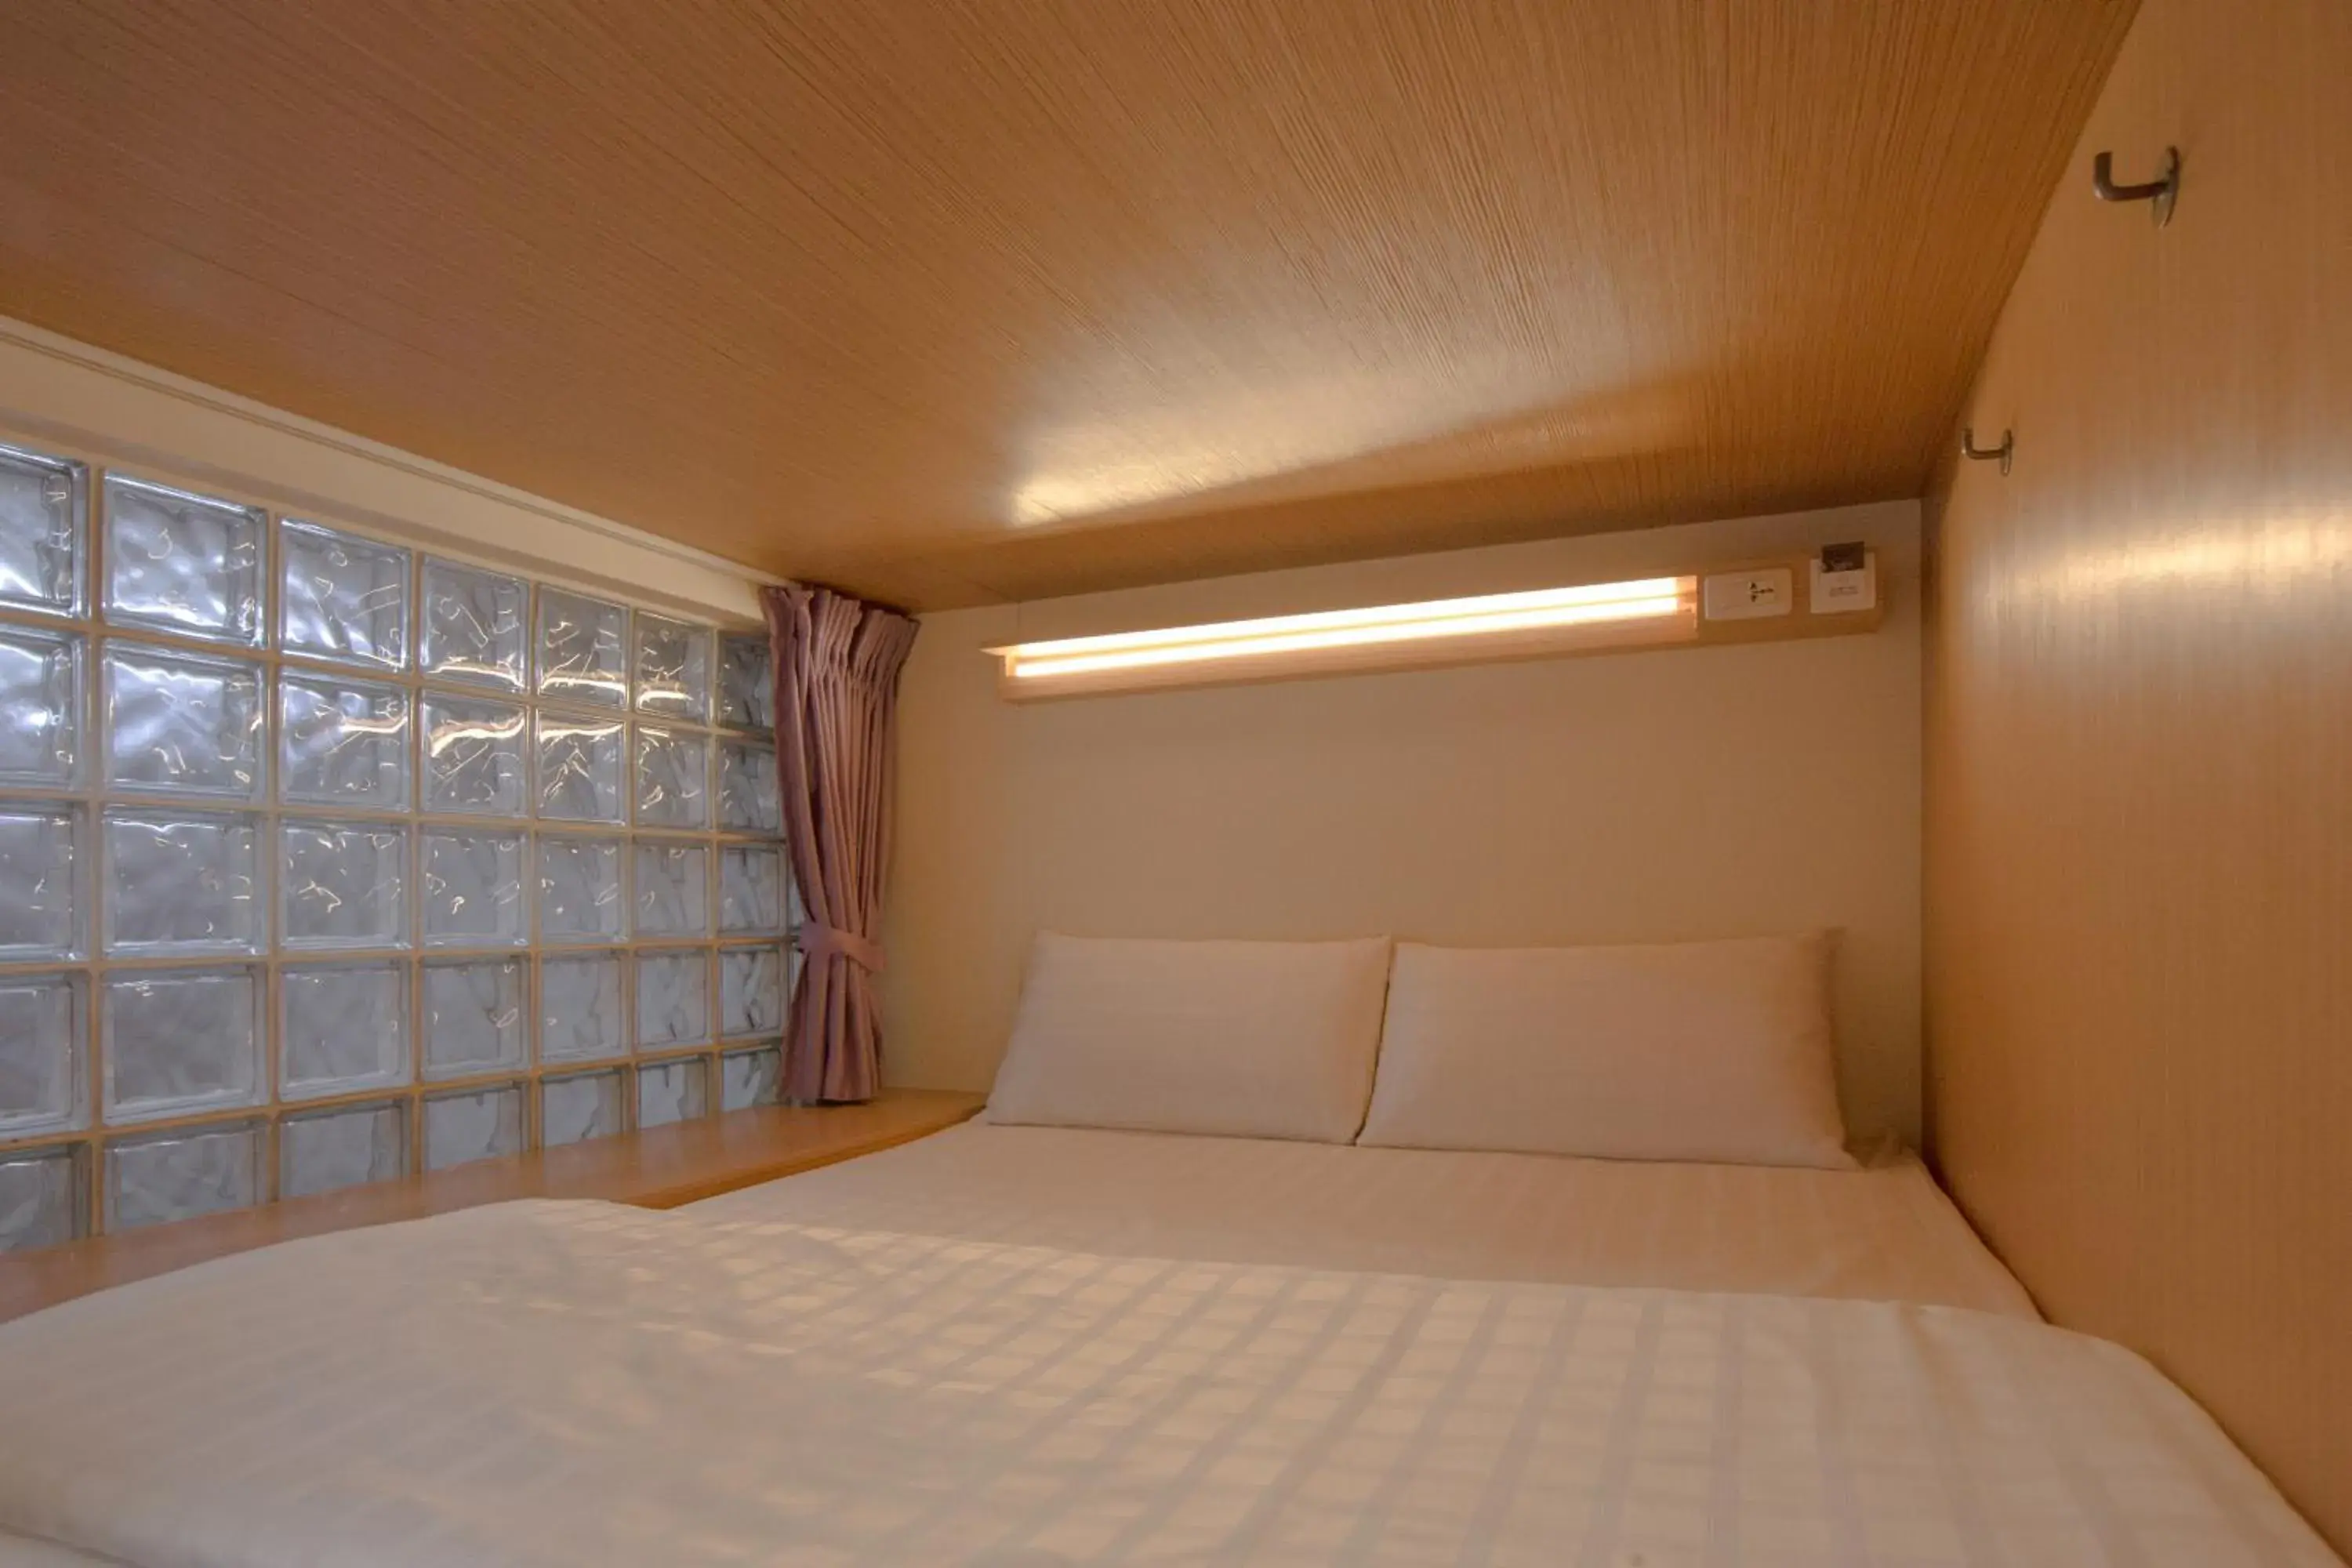 Bed, Room Photo in Fun Inn Taipei